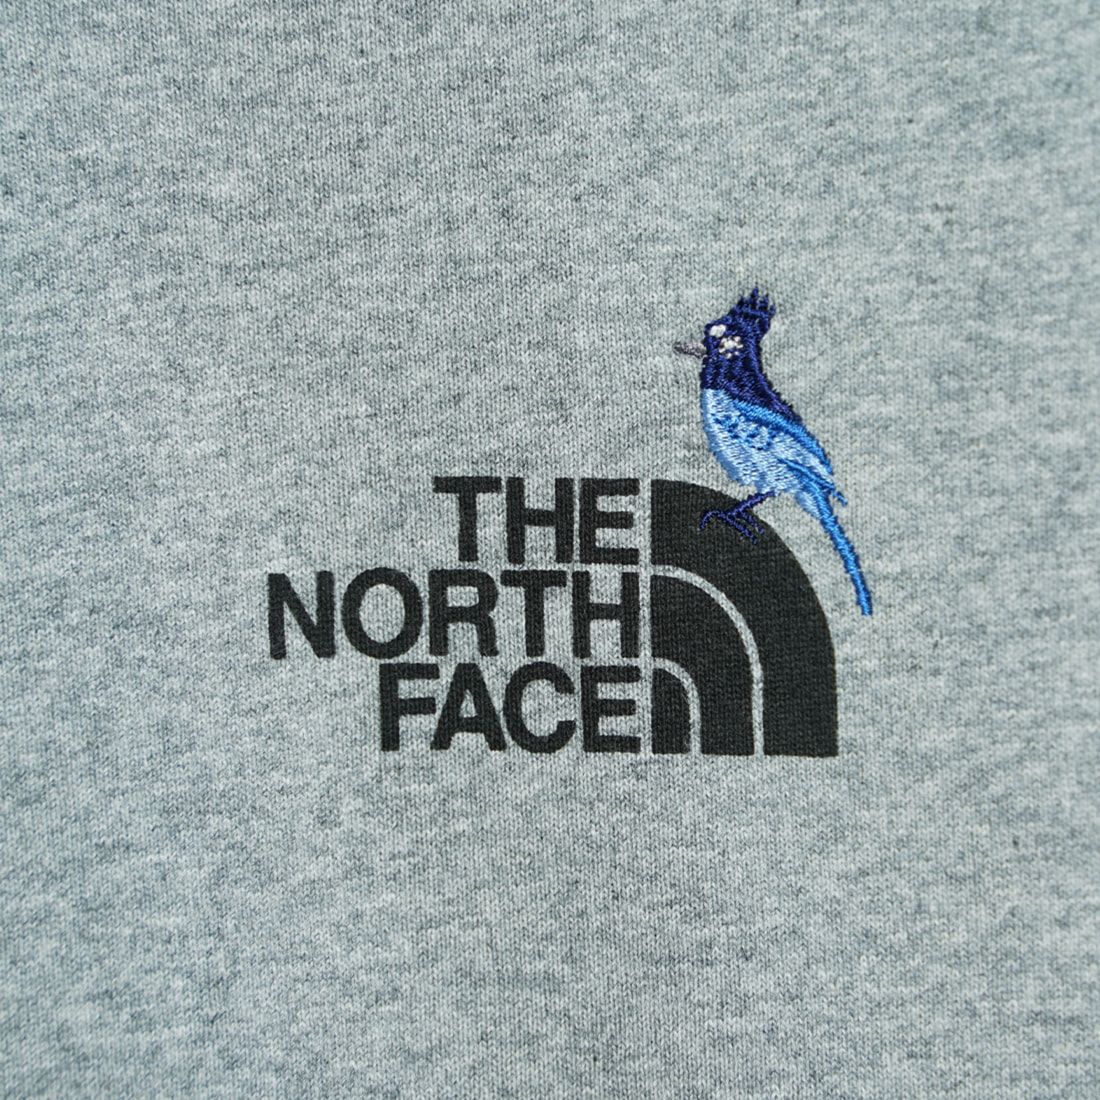 THE NORTH FACE [ザ ノースフェイス] ロングスリーブズーピッカーティー [NT32440] Z